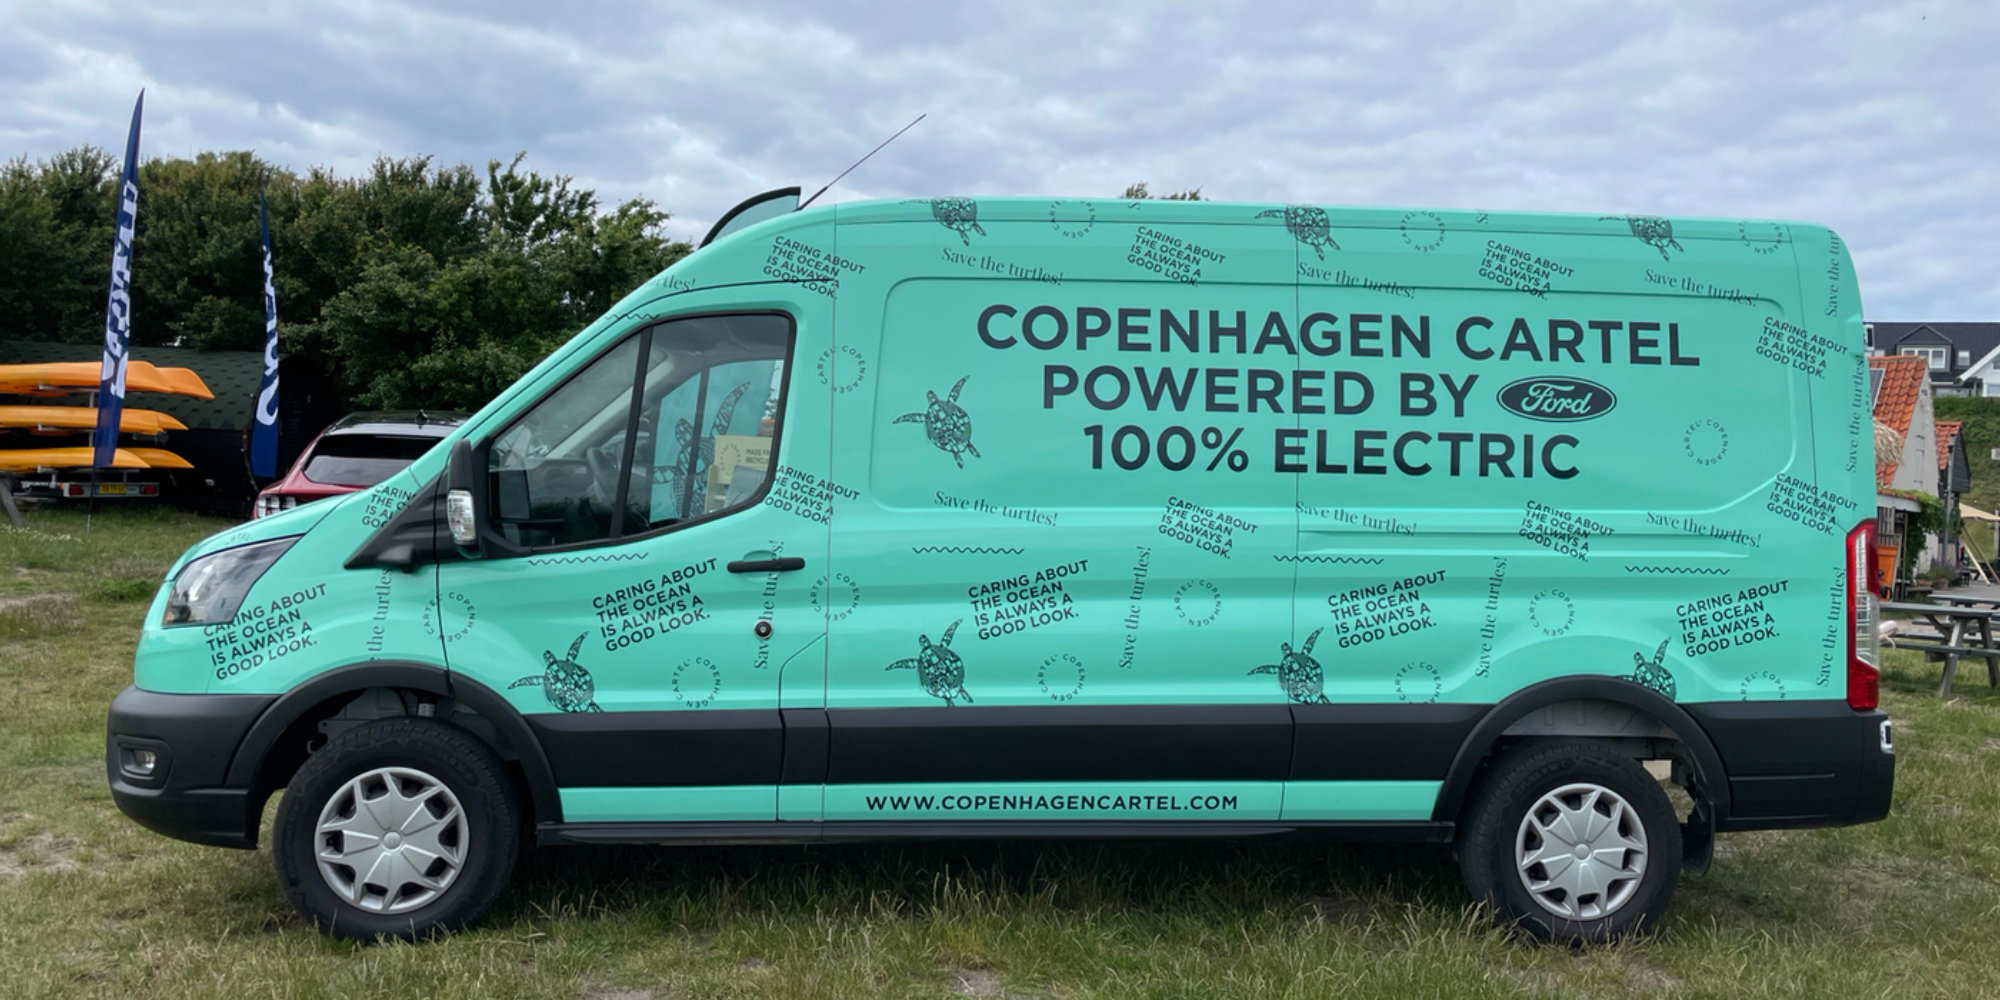 Ford bringer Copenhagen vigtige rundt i Danmark